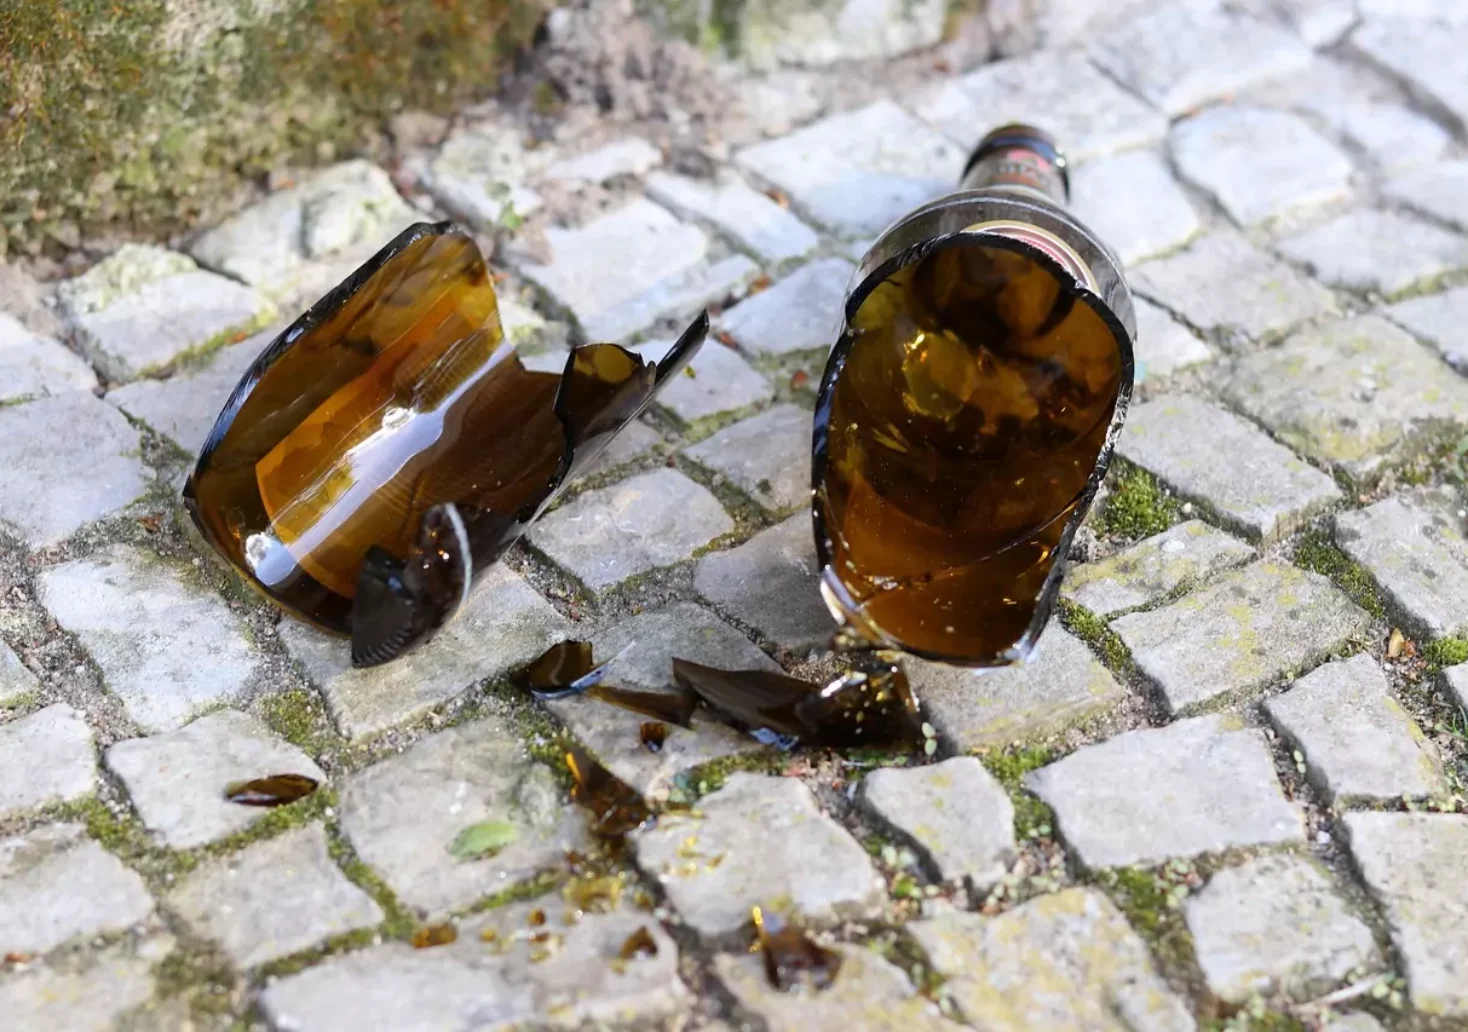 Symbolfoto auf 5min.at zeigt eine zerbrochen Glasflasche am Boden.